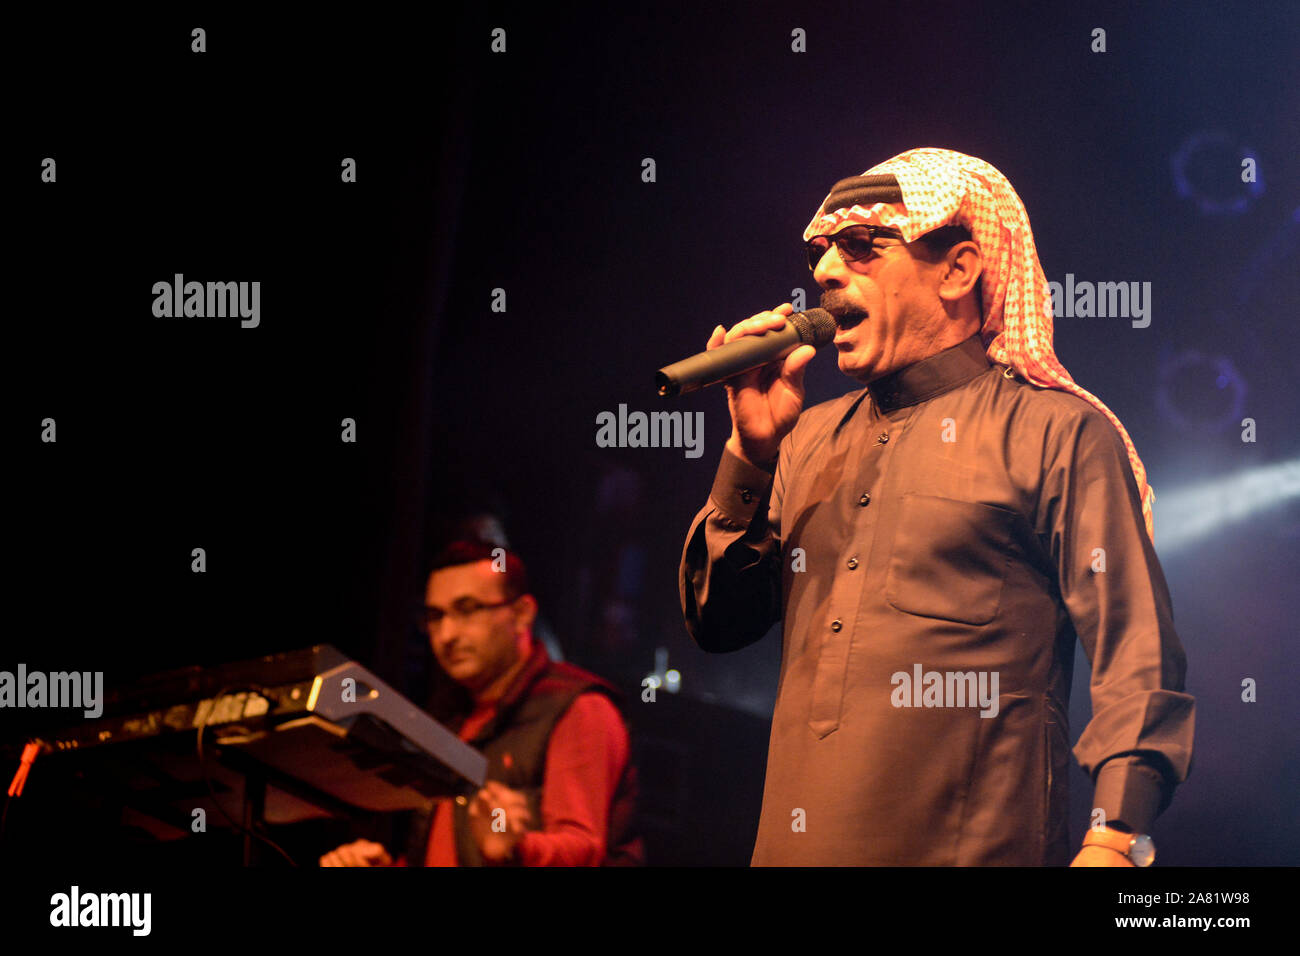 Cantante sirio Omar Souleyman interpretando en vivo. Foto de stock